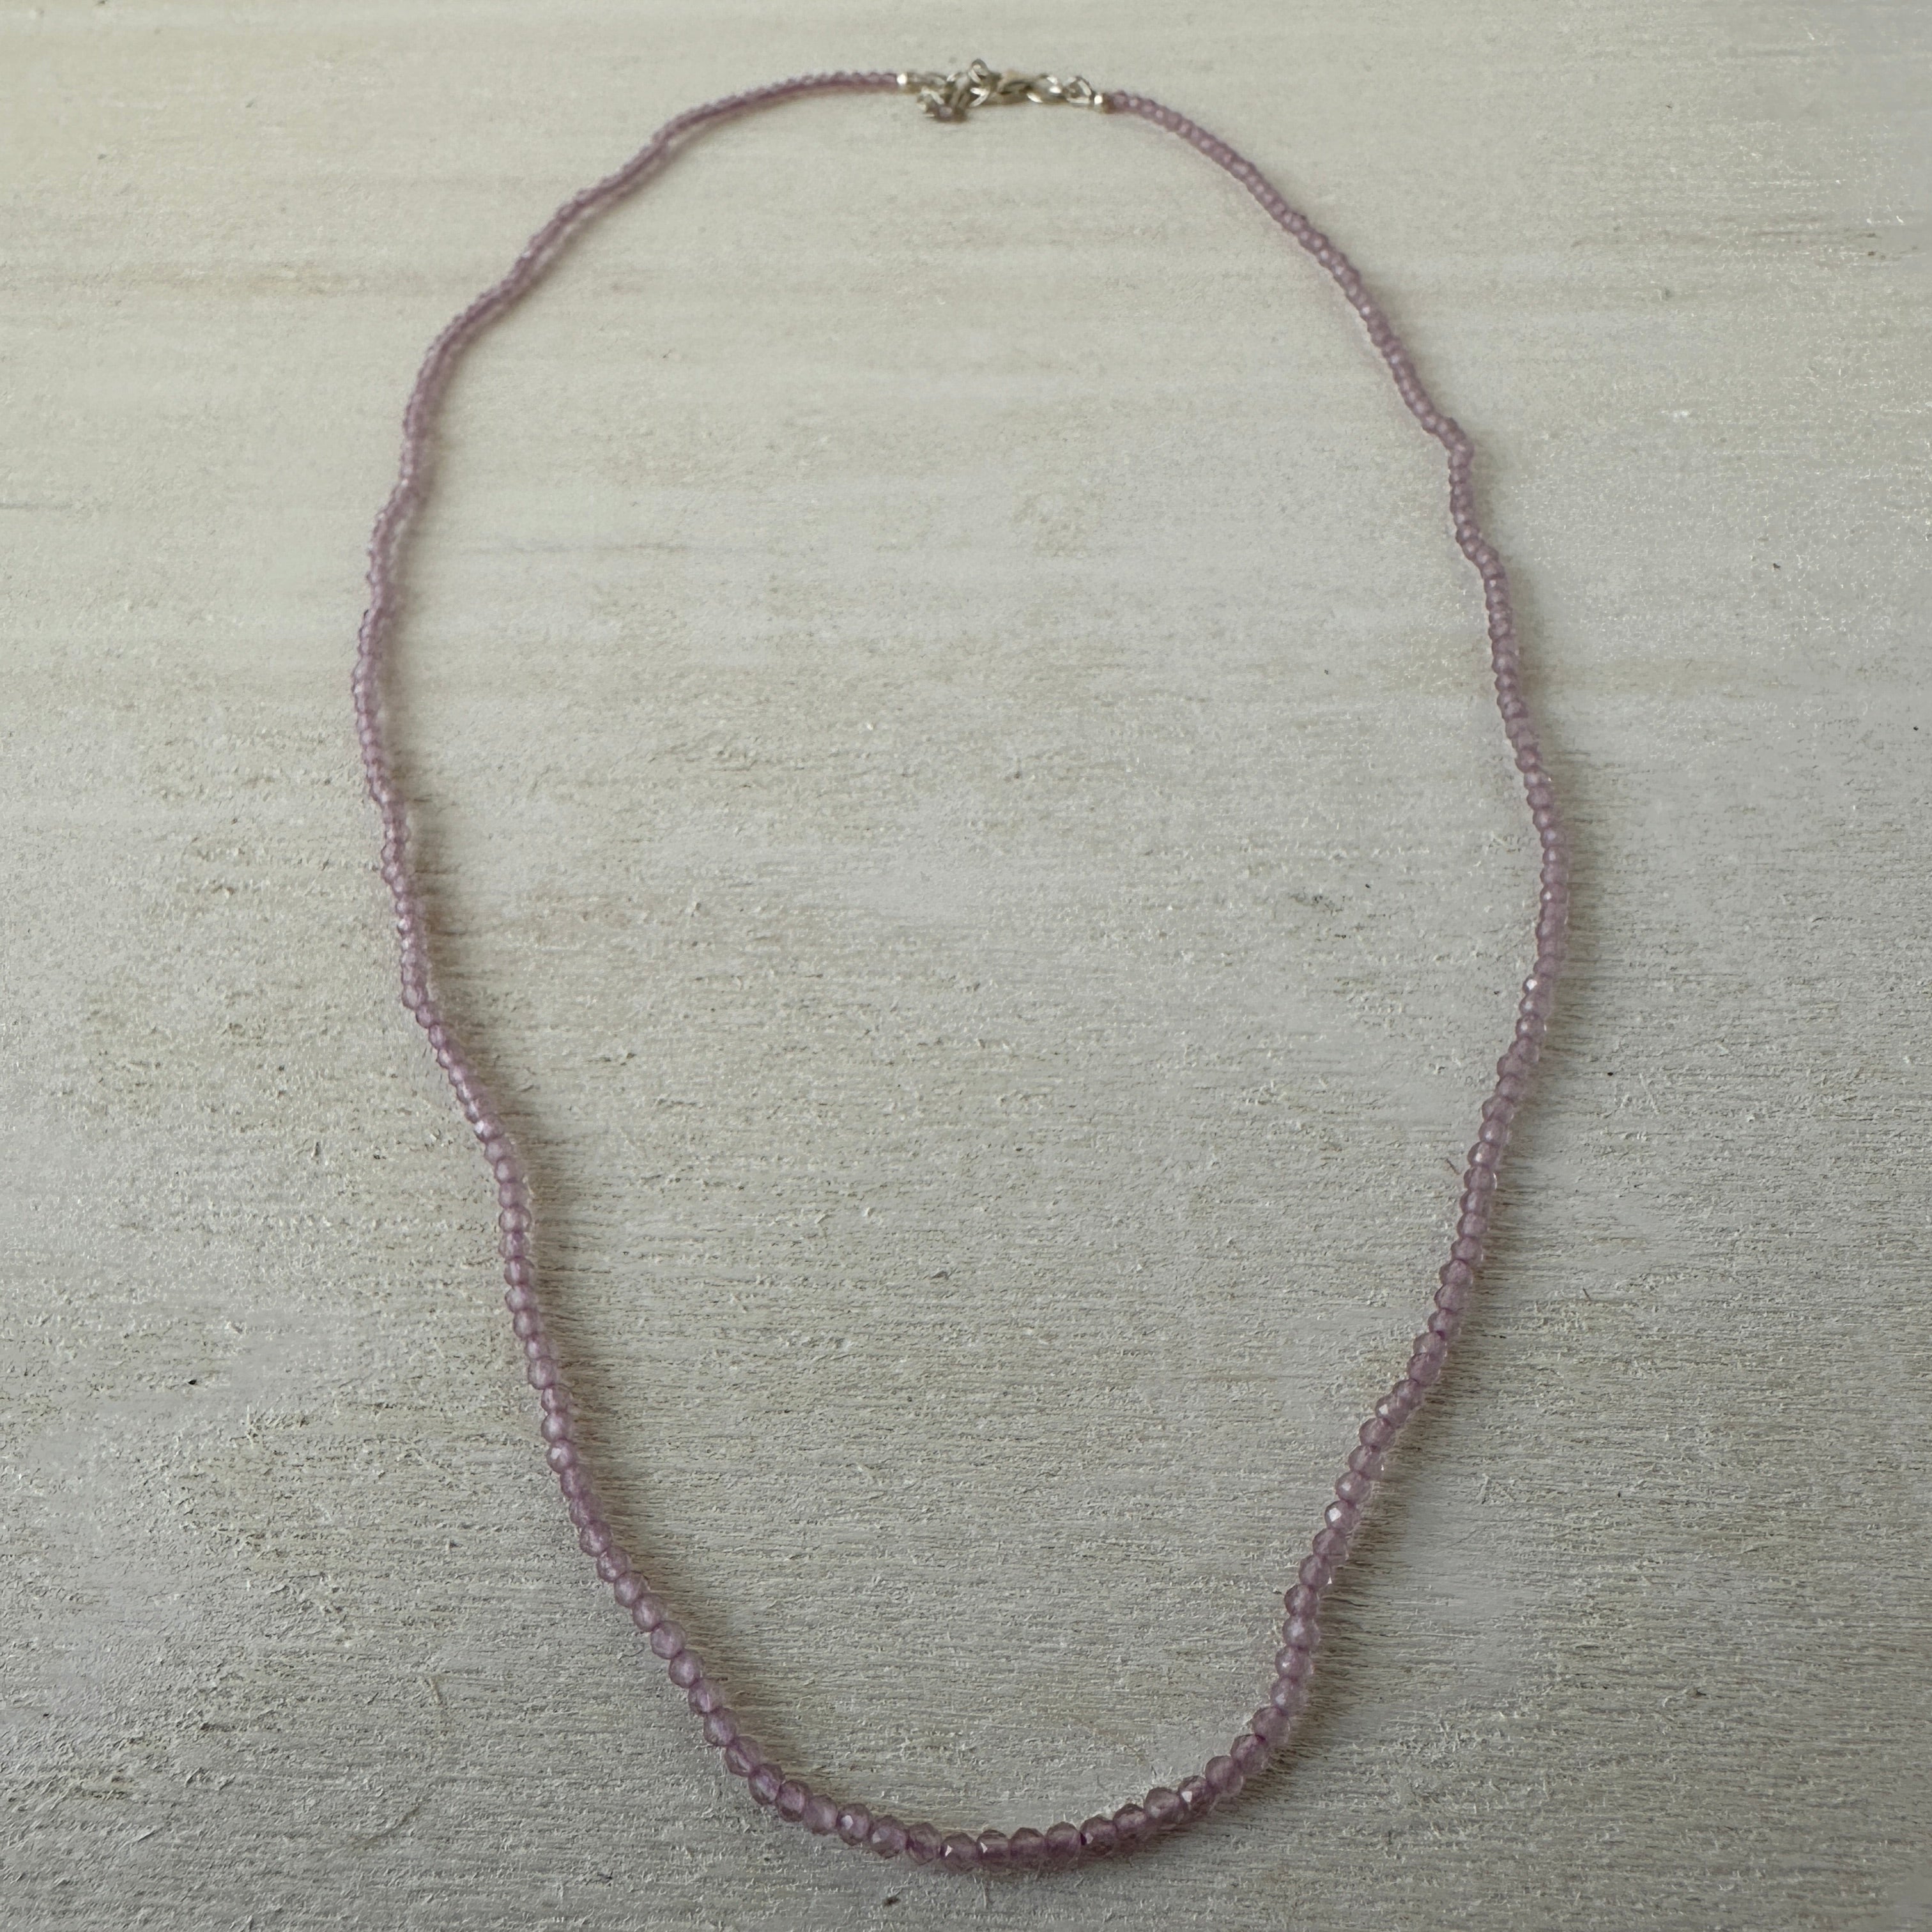 Lavender Jade Gemstone Crystal Sterling Silver Necklace / Bracelet - 18"